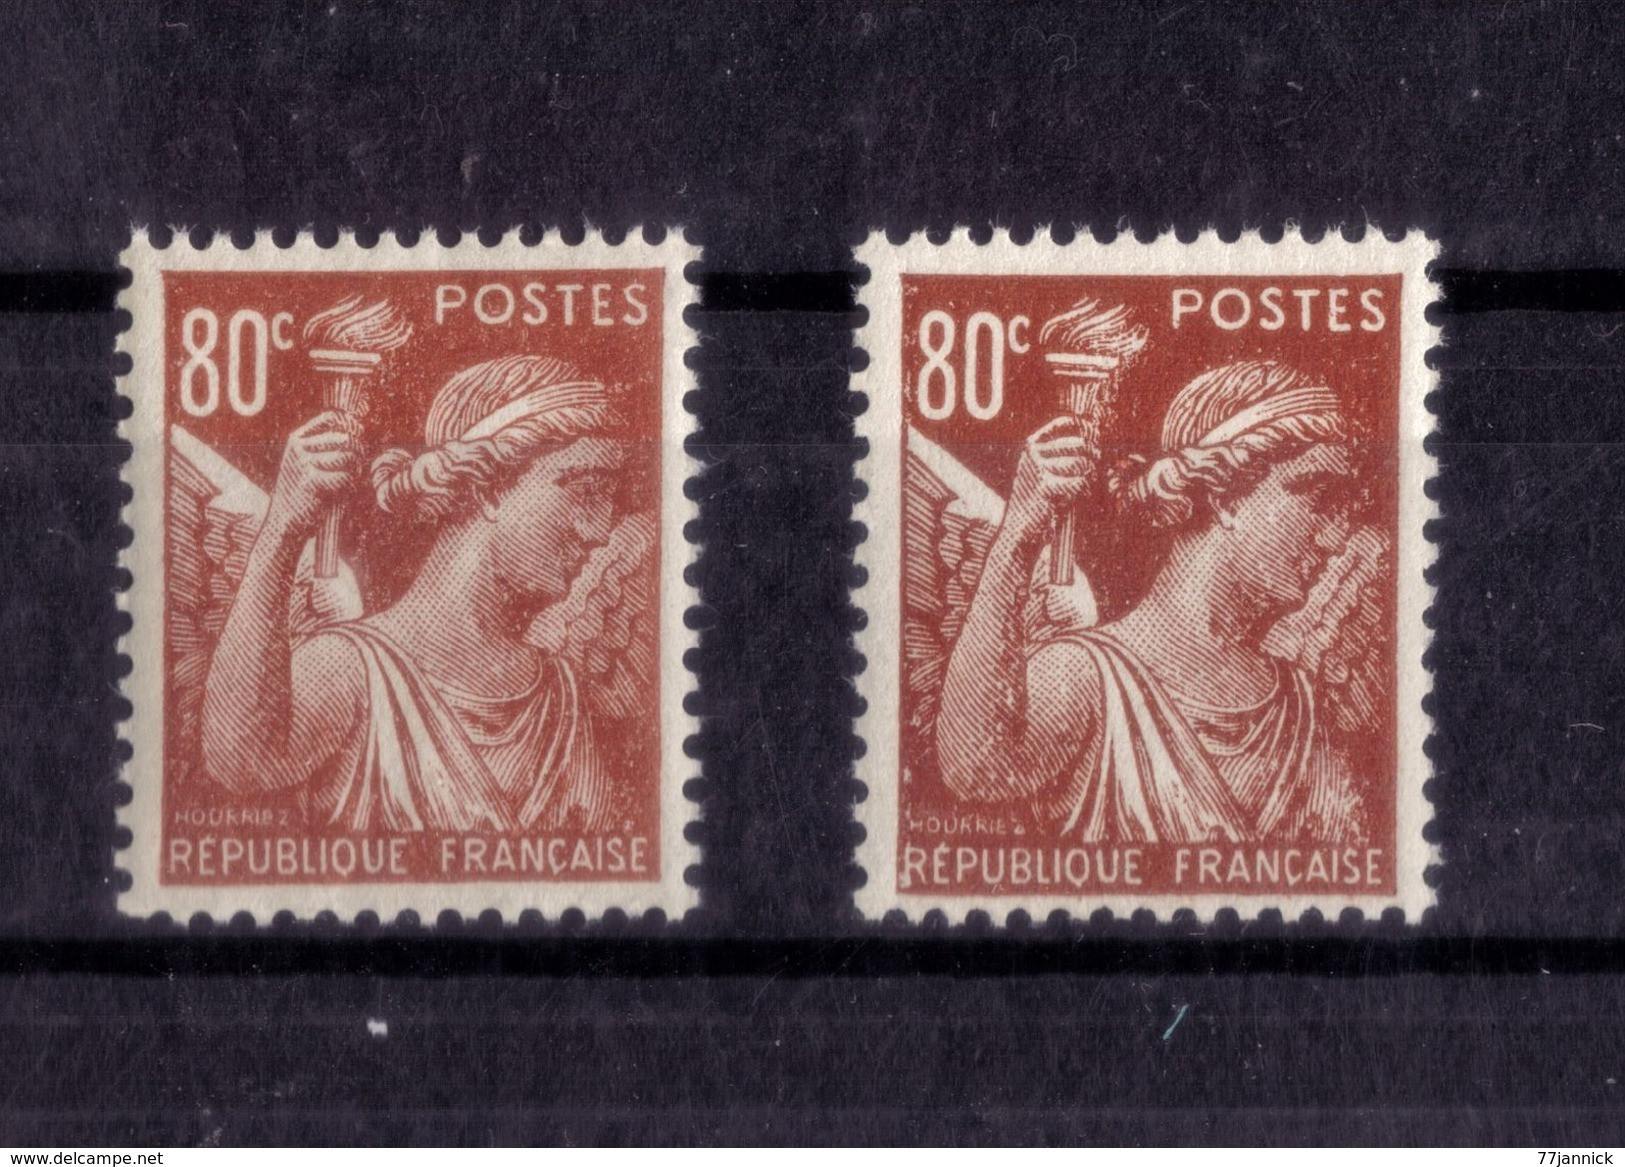 VARIETE DE COULEUR N° 431 ( Clair Et Foncé) NEUF** - Unused Stamps